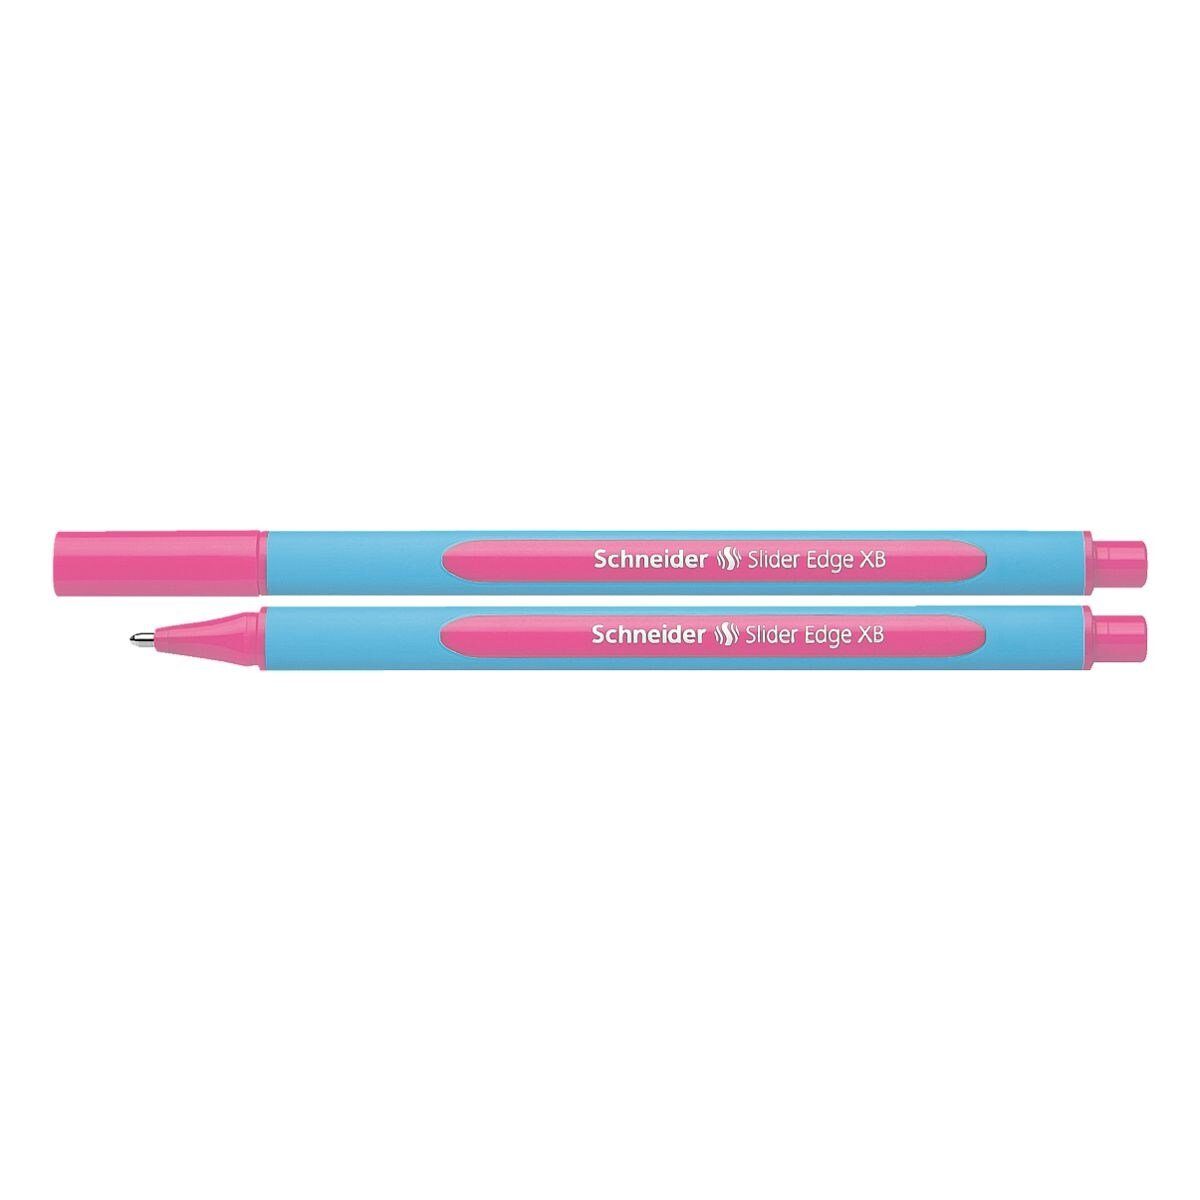 Schneider Kugelschreiber Slider Edge XB 1522, mit Kappe, Strichbreite: 0,7 mm (XB) pink